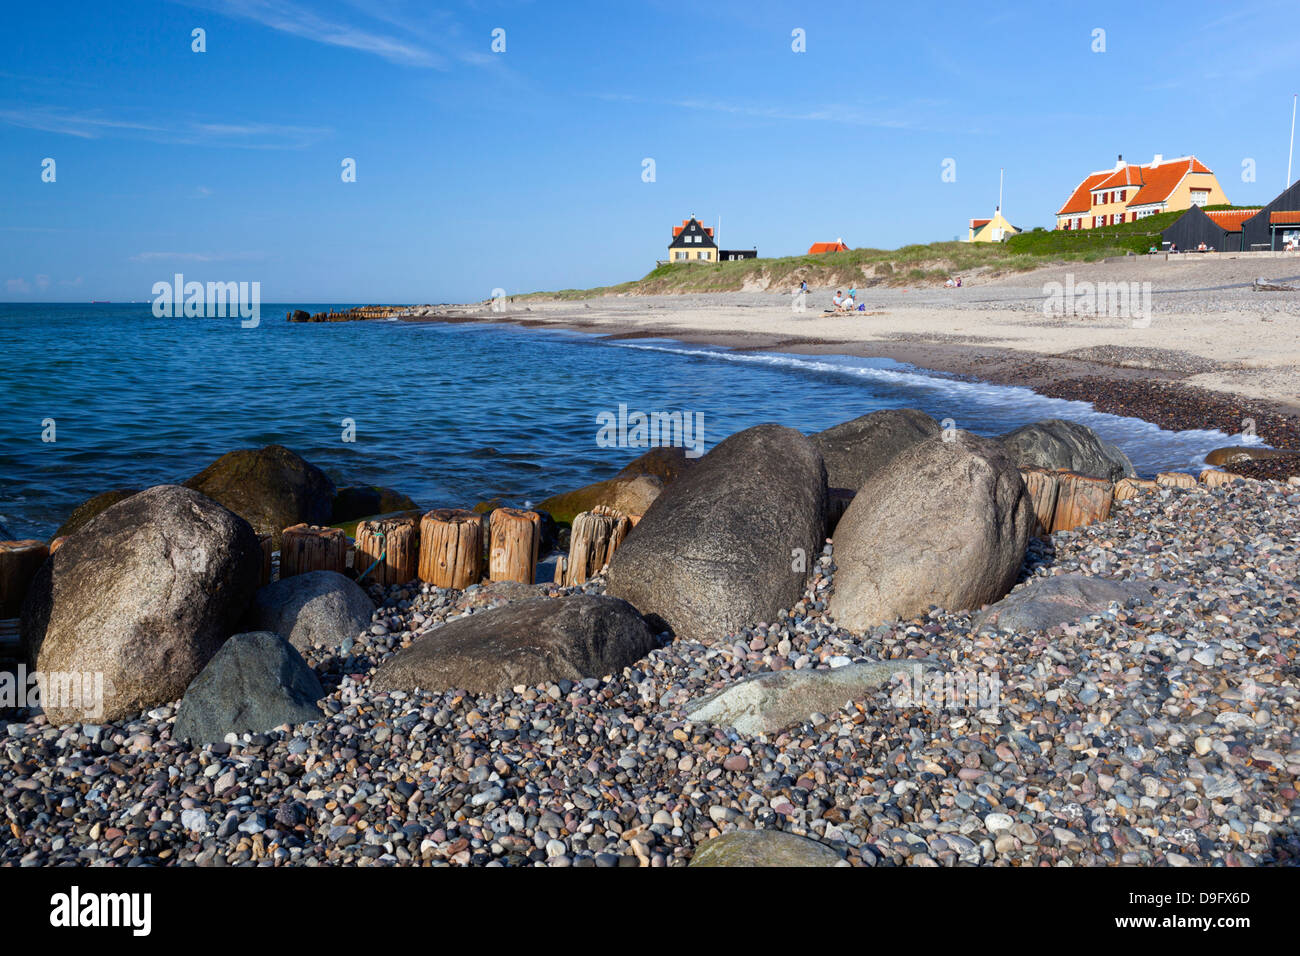 View along beach, Gammel Skagen, Jutland, Denmark, Scandinavia Stock Photo